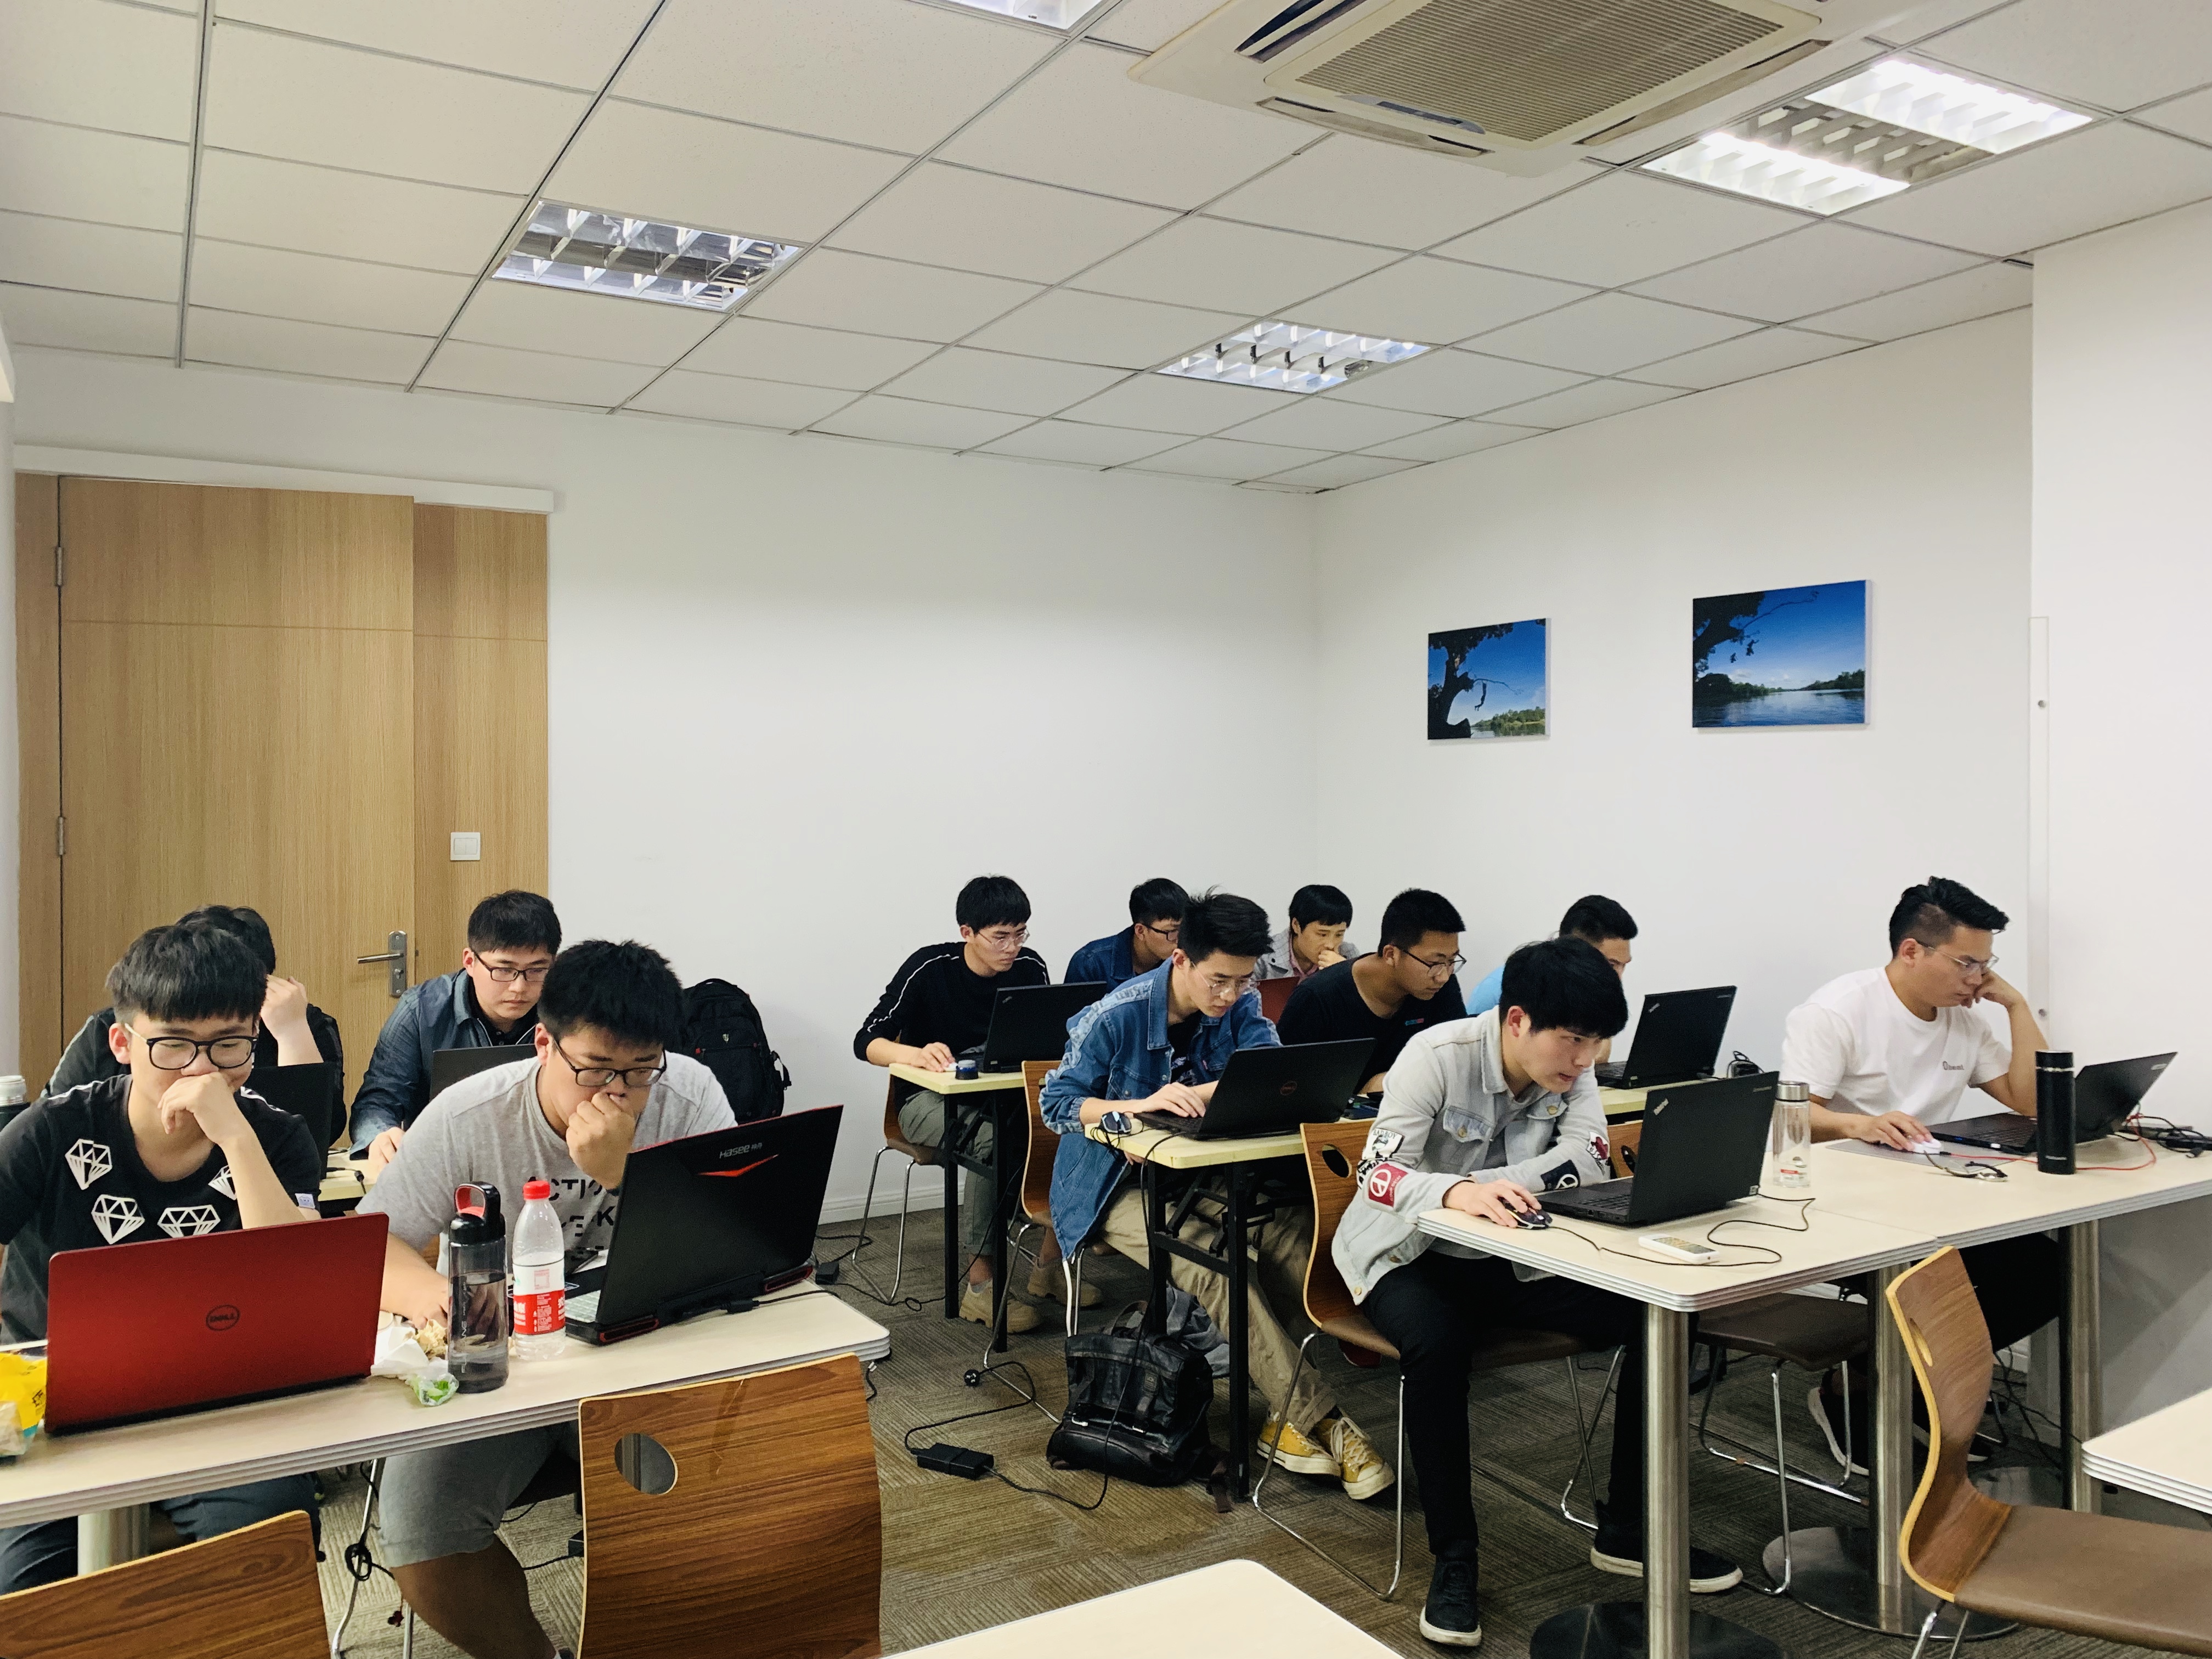 iS-RPA 高级设计师培训 - 上海 20190513 班 - 培训完成